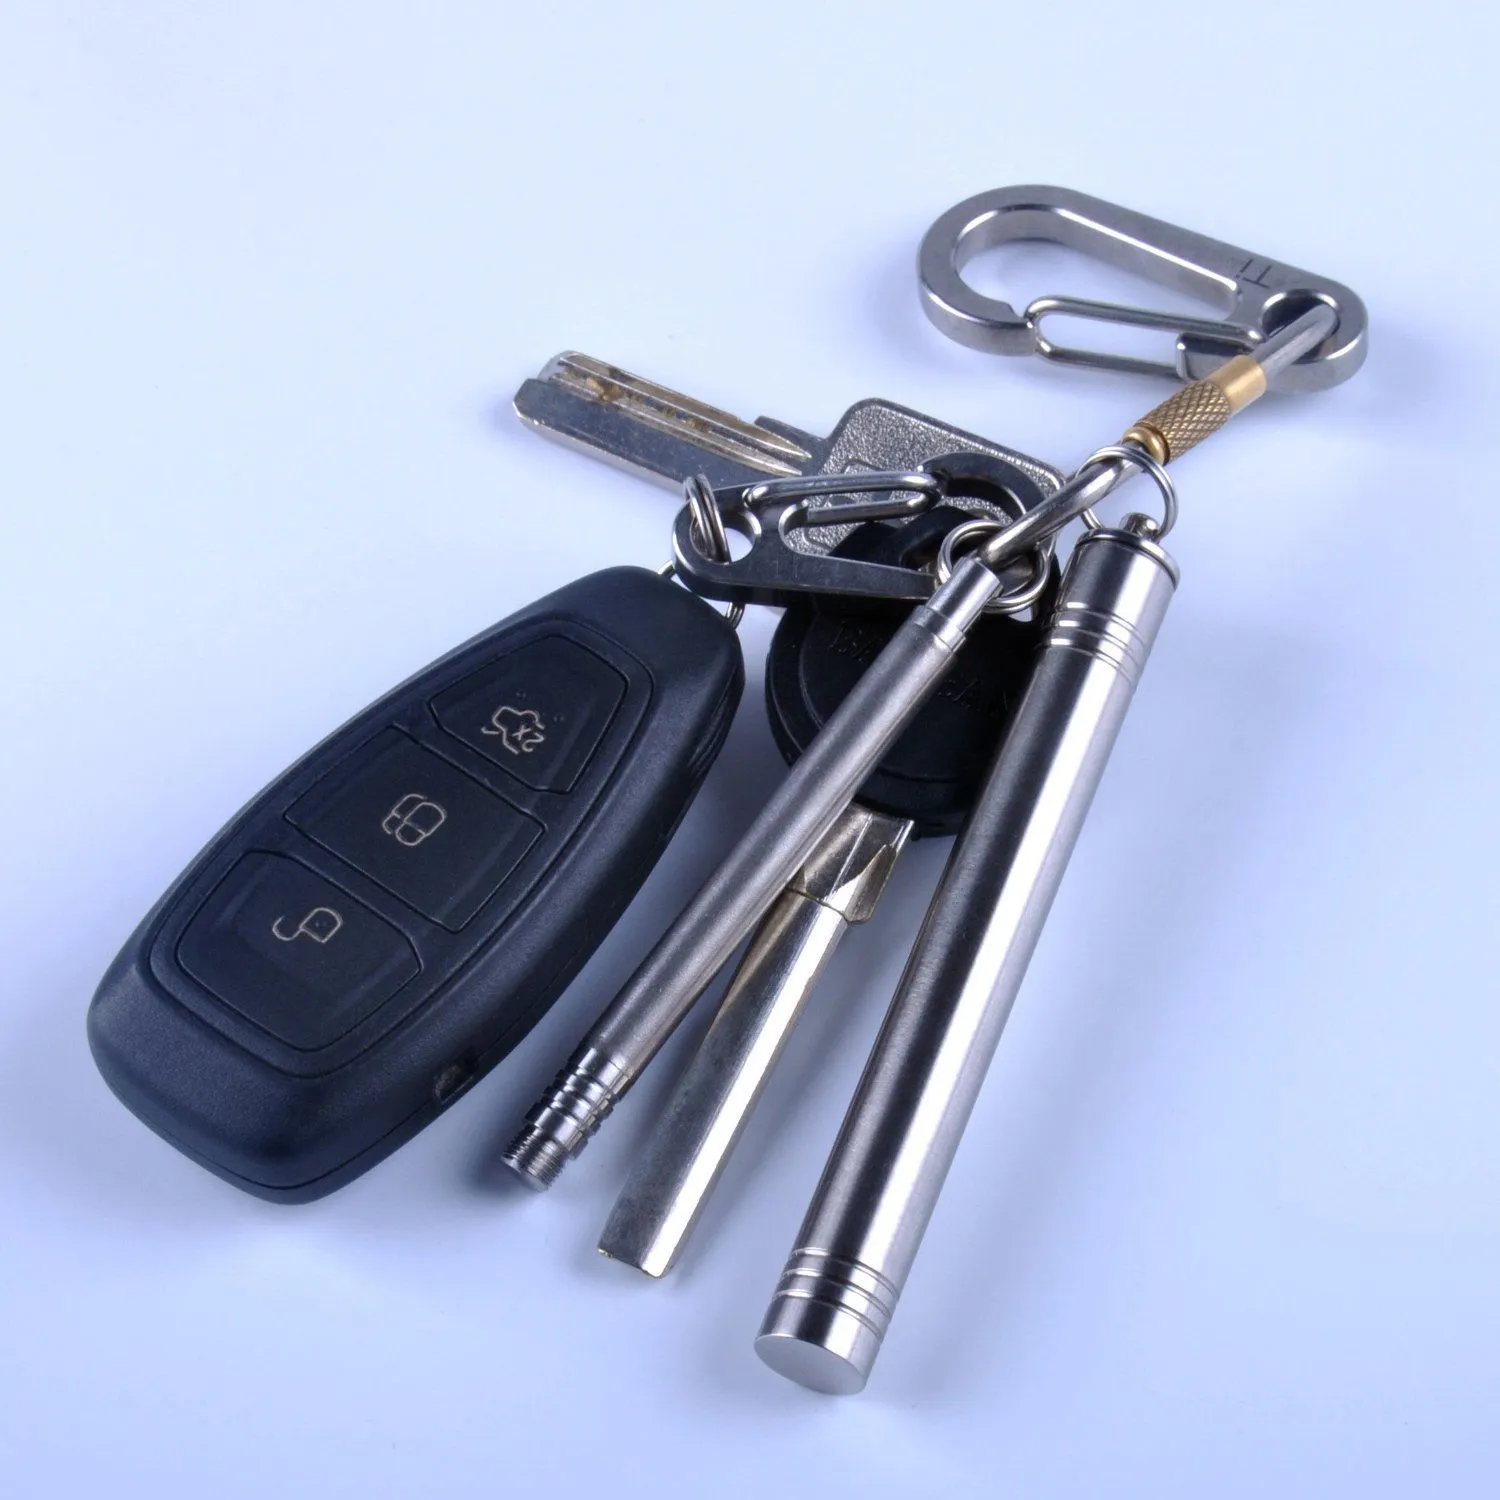 Porte-clés de poche Portable en titane et acier, support pour cure-dents avec porte-clés de voyage, boîte pour cure-dents 288j